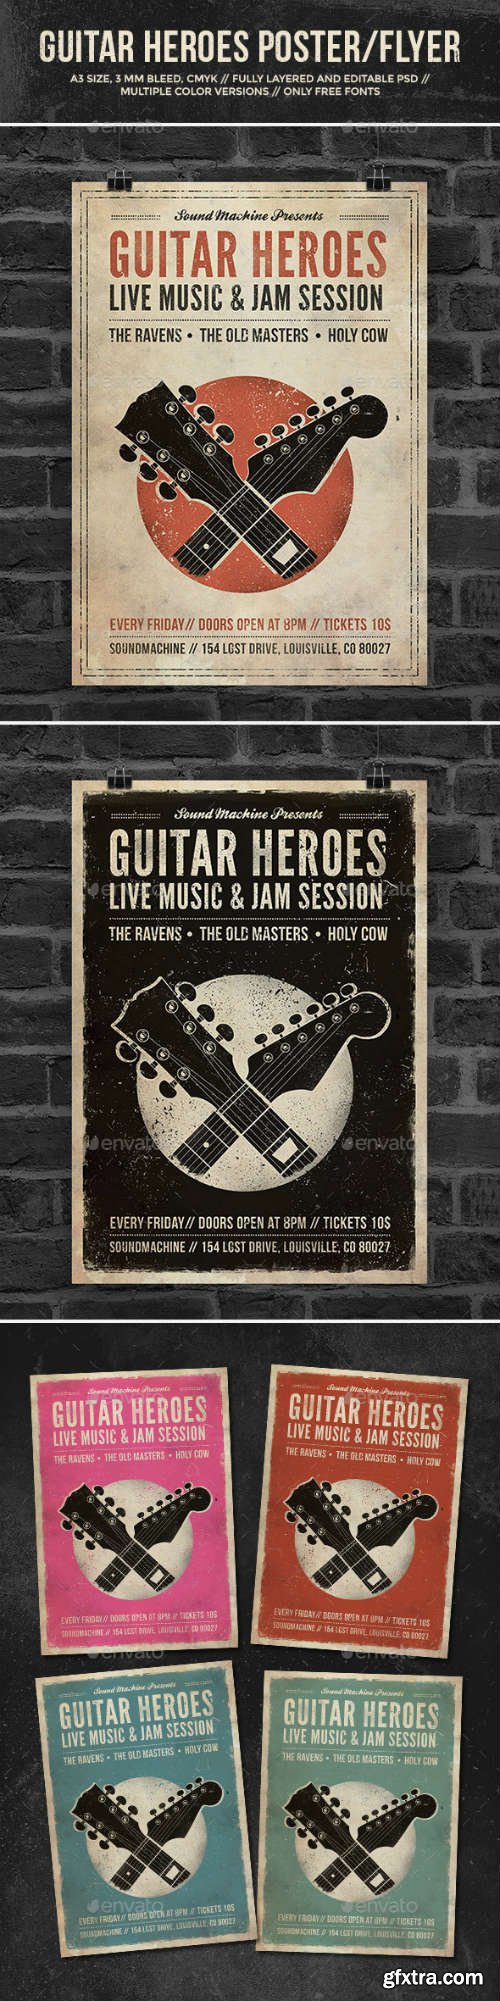 GR - Guitar Heroes - Vintage Music Poster/Flyer 7228925